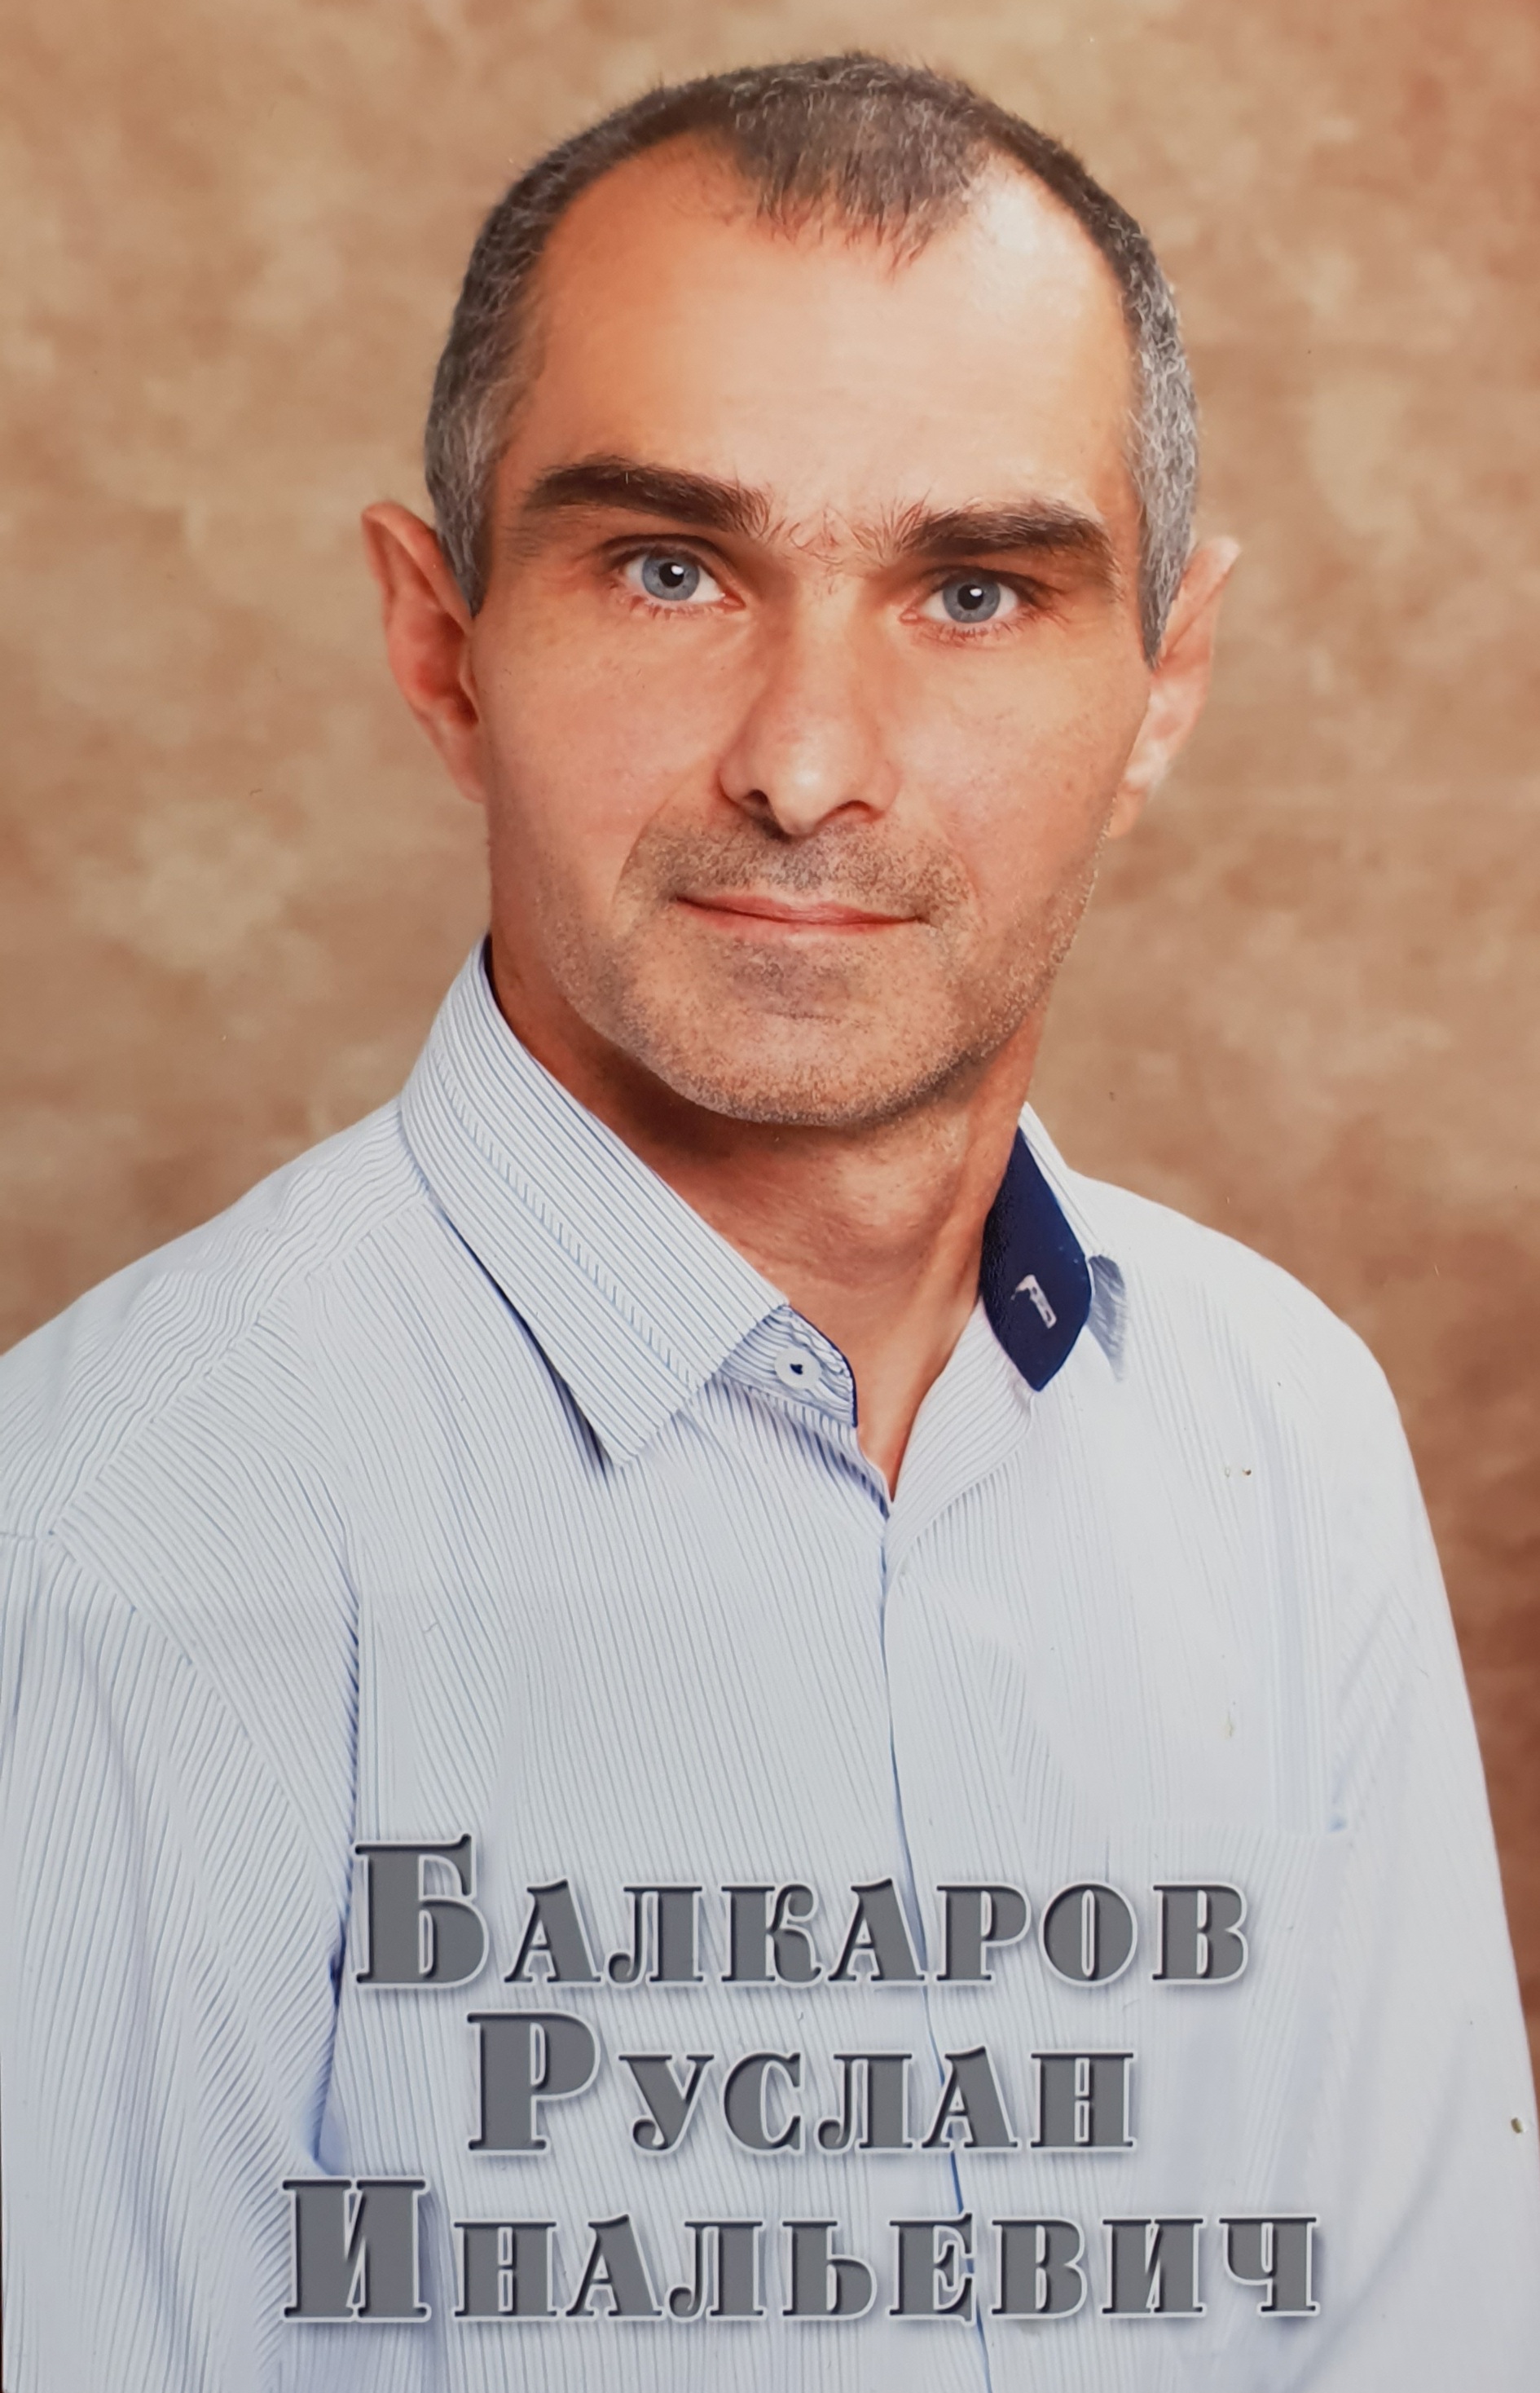 Балкаров Руслан Инальевич.